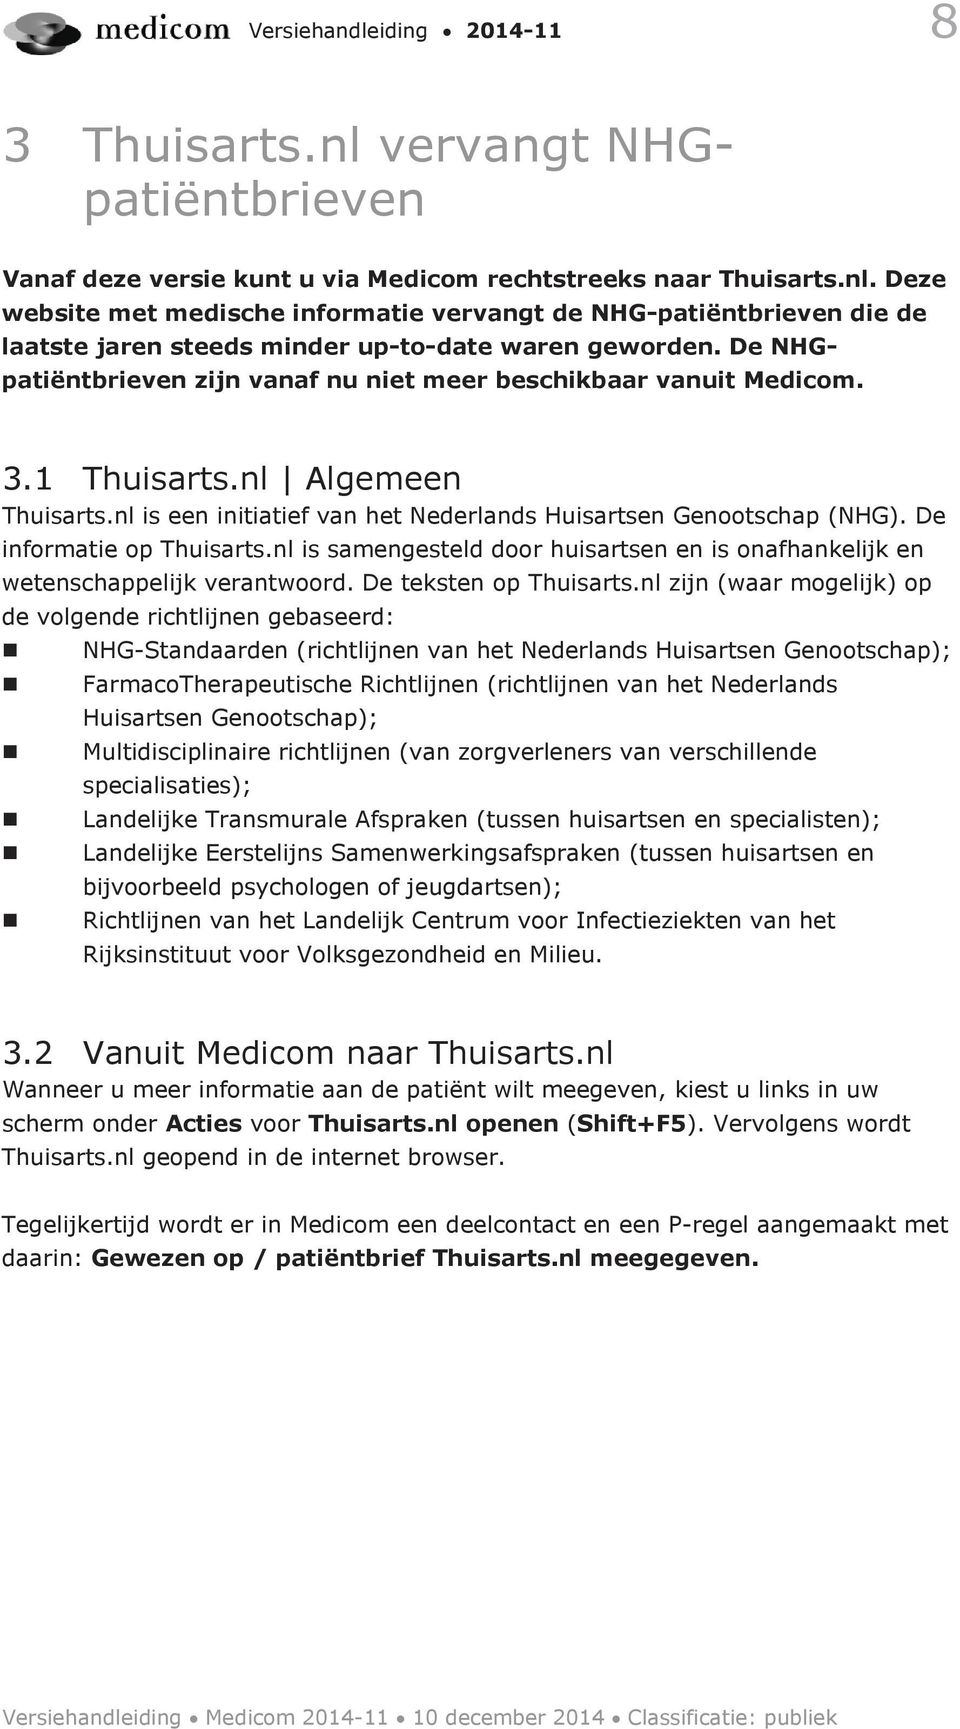 De informatie op Thuisarts.nl is samengesteld door huisartsen en is onafhankelijk en wetenschappelijk verantwoord. De teksten op Thuisarts.